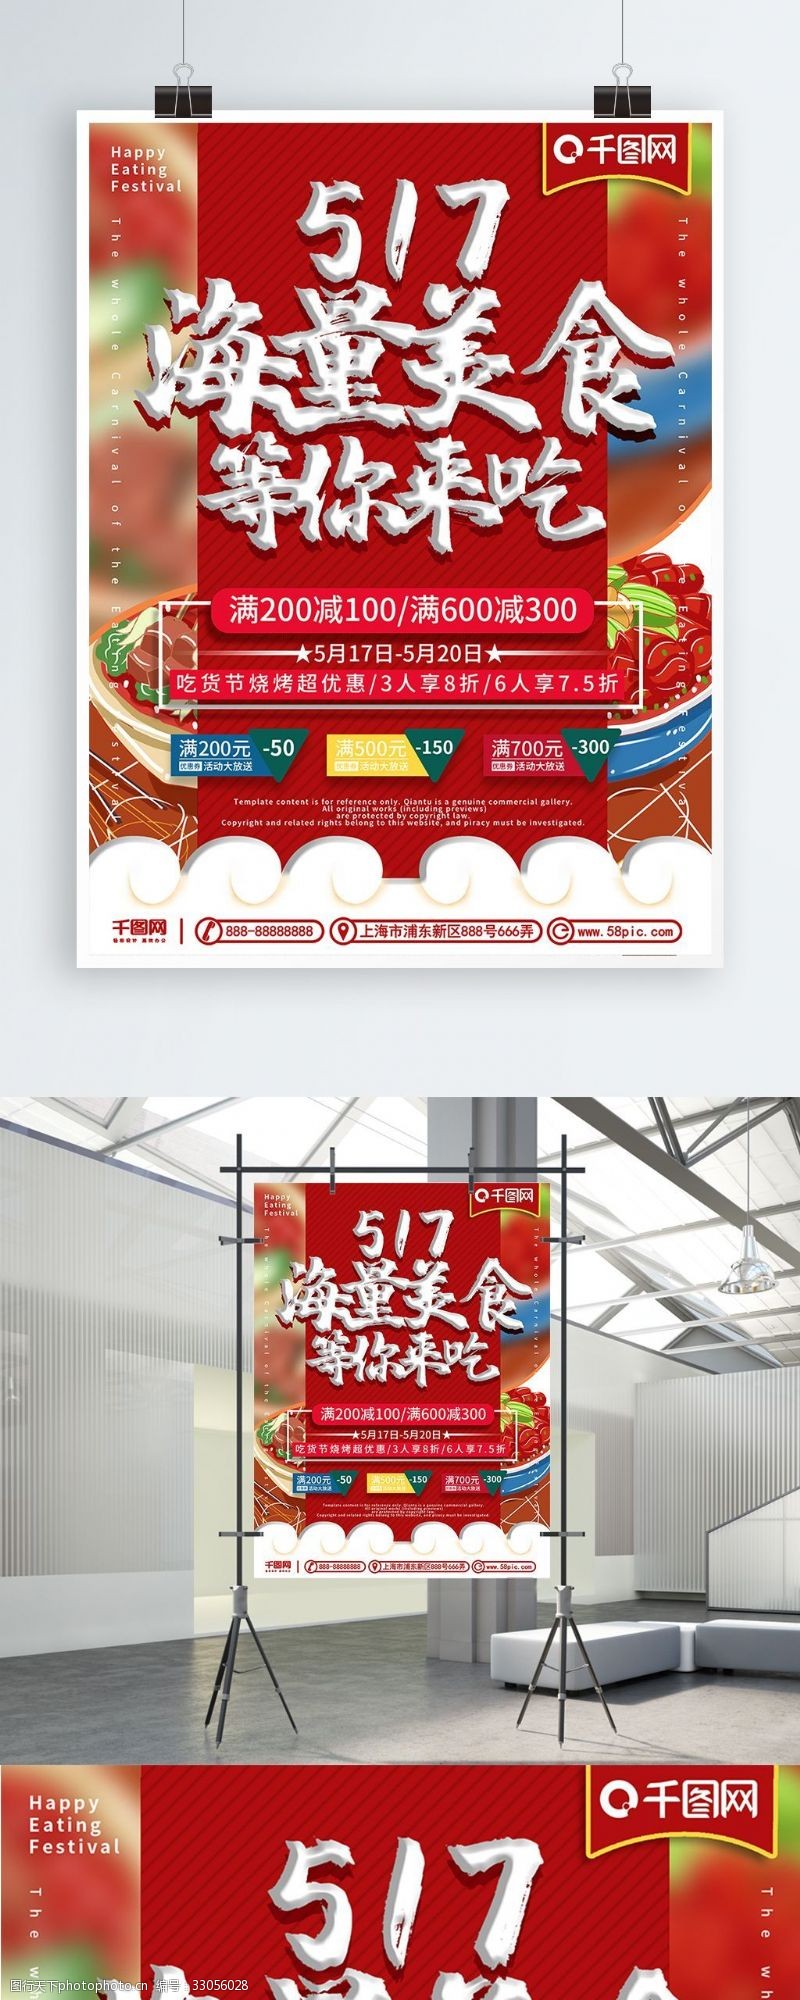 创意手绘517吃货节美食促销优惠活动海报